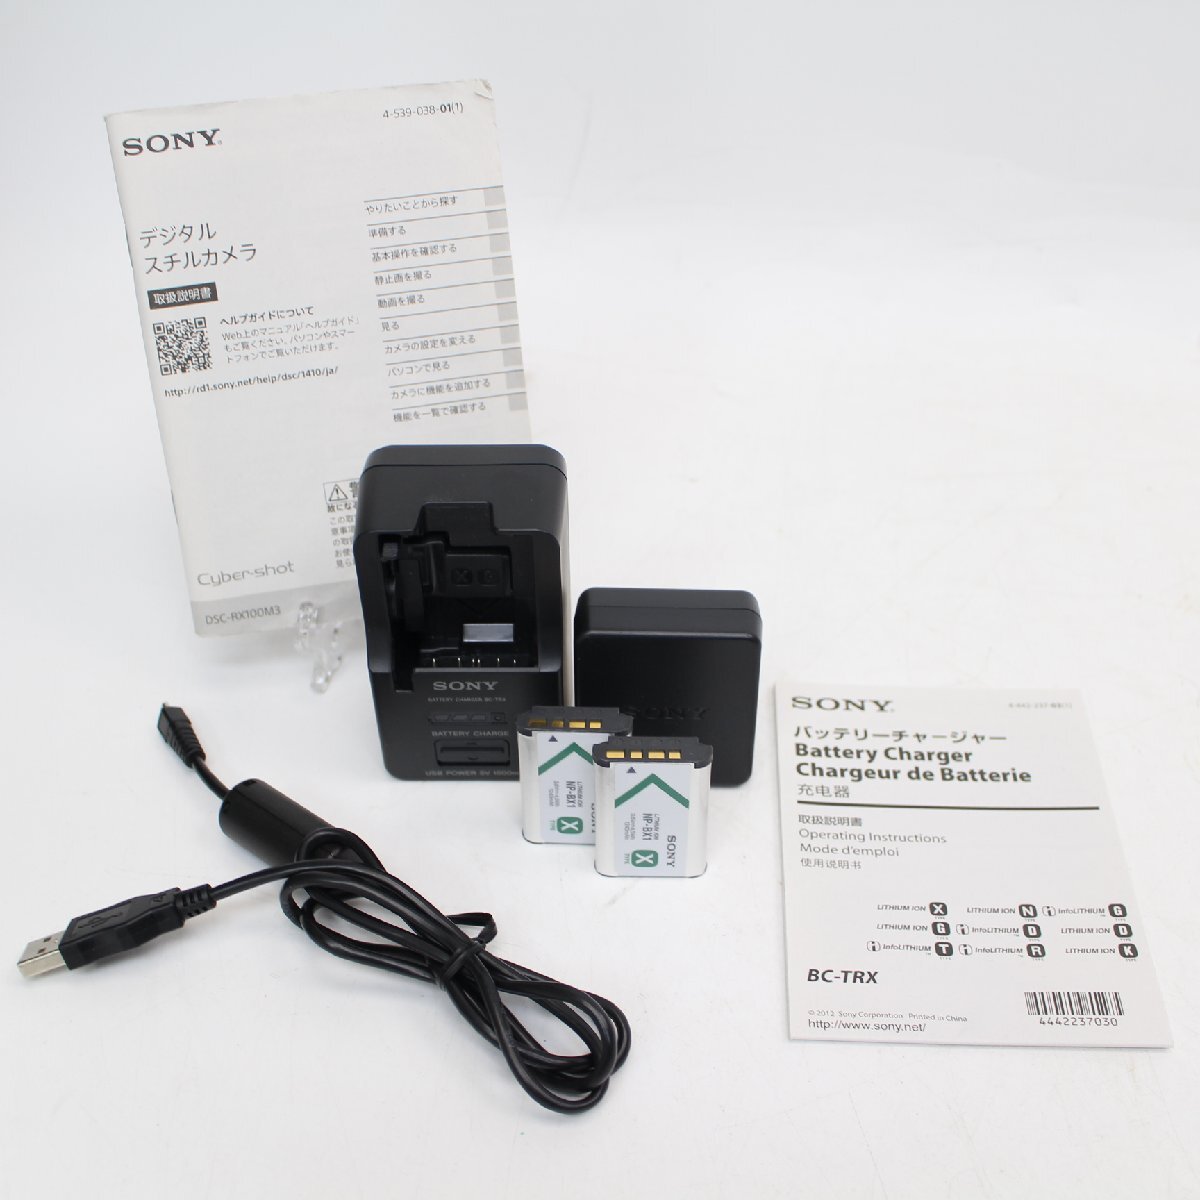 572)【1円スタート♪】SONY ソニー Cyber-shot サイバーショット DSC-RX100M3 コンパクトデジタルカメラ ブラック